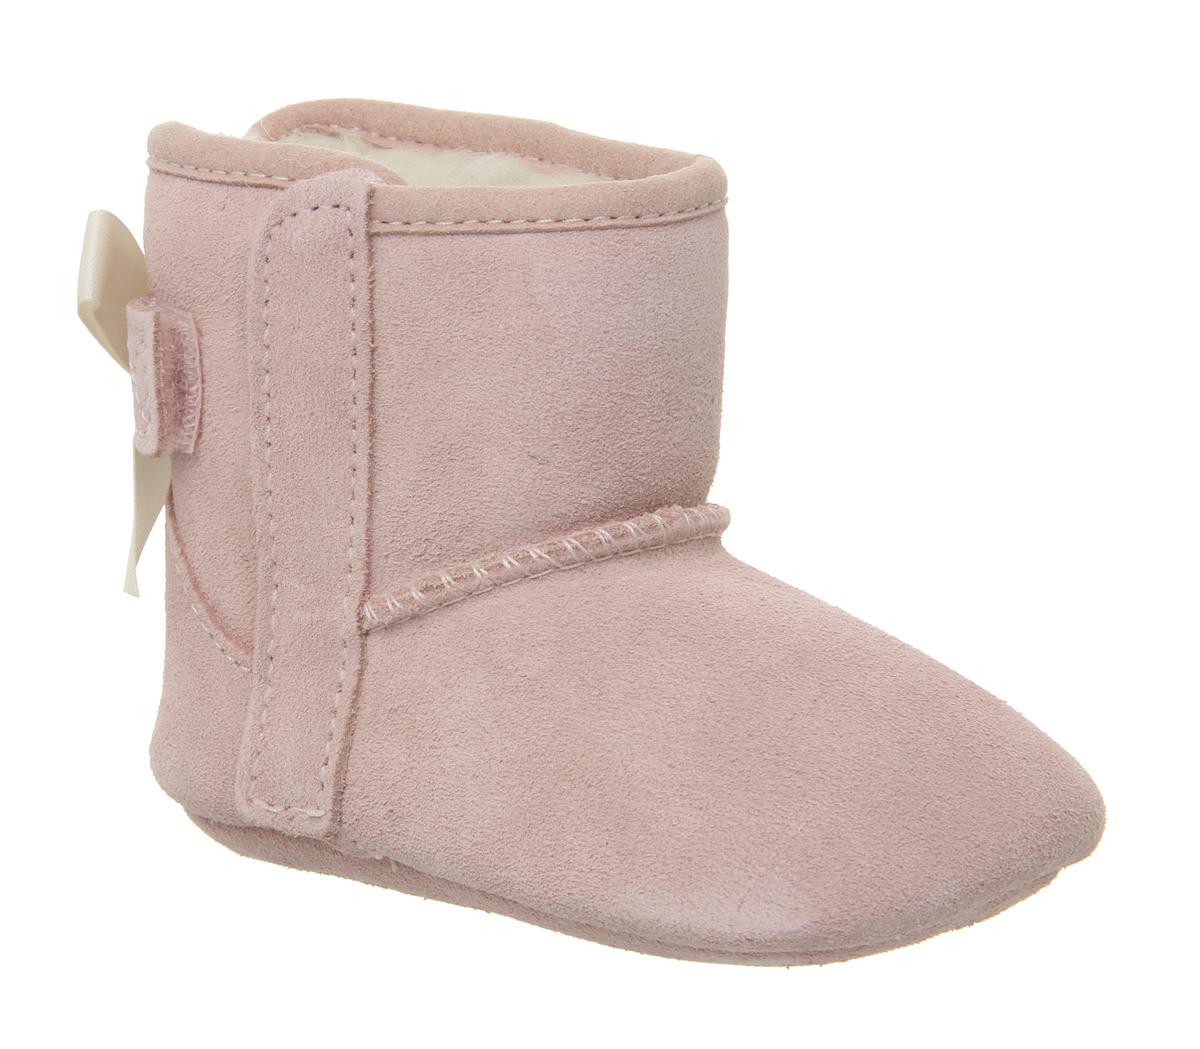 infant pink ugg boots